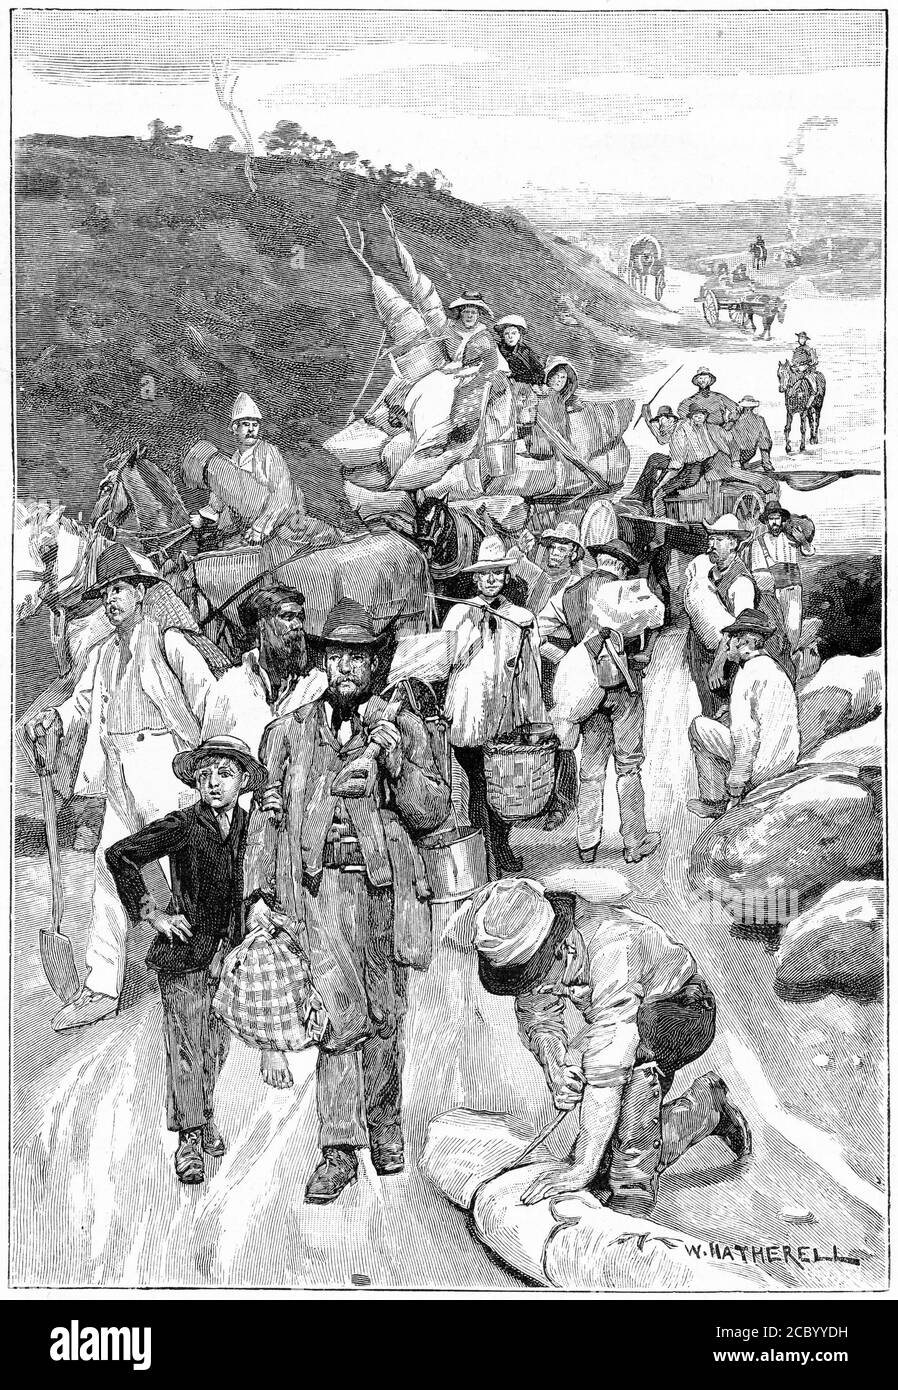 Gravur von Menschen auf dem Weg zu den Baggern in Australien während der 1850er Jahre stürmt Gold Stockfoto